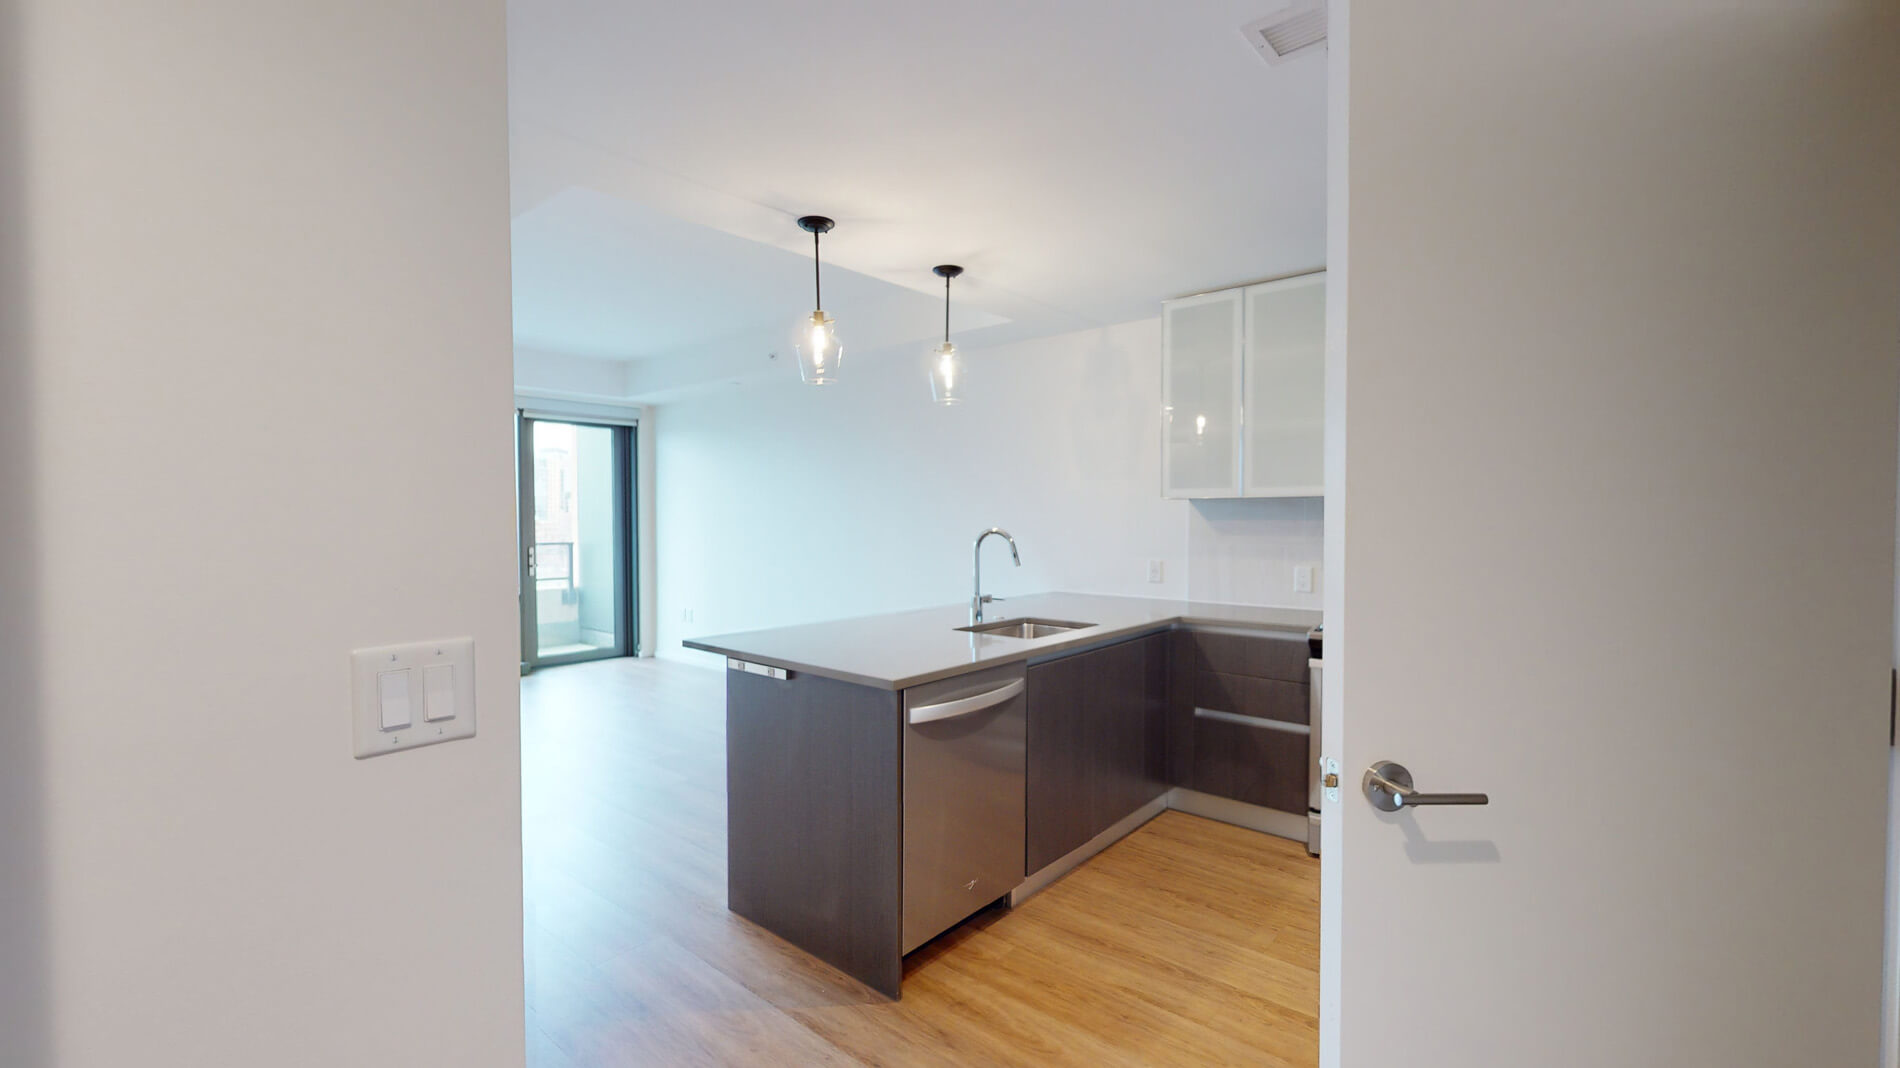 Photos of apartment on Traveler St.,Boston MA 02118